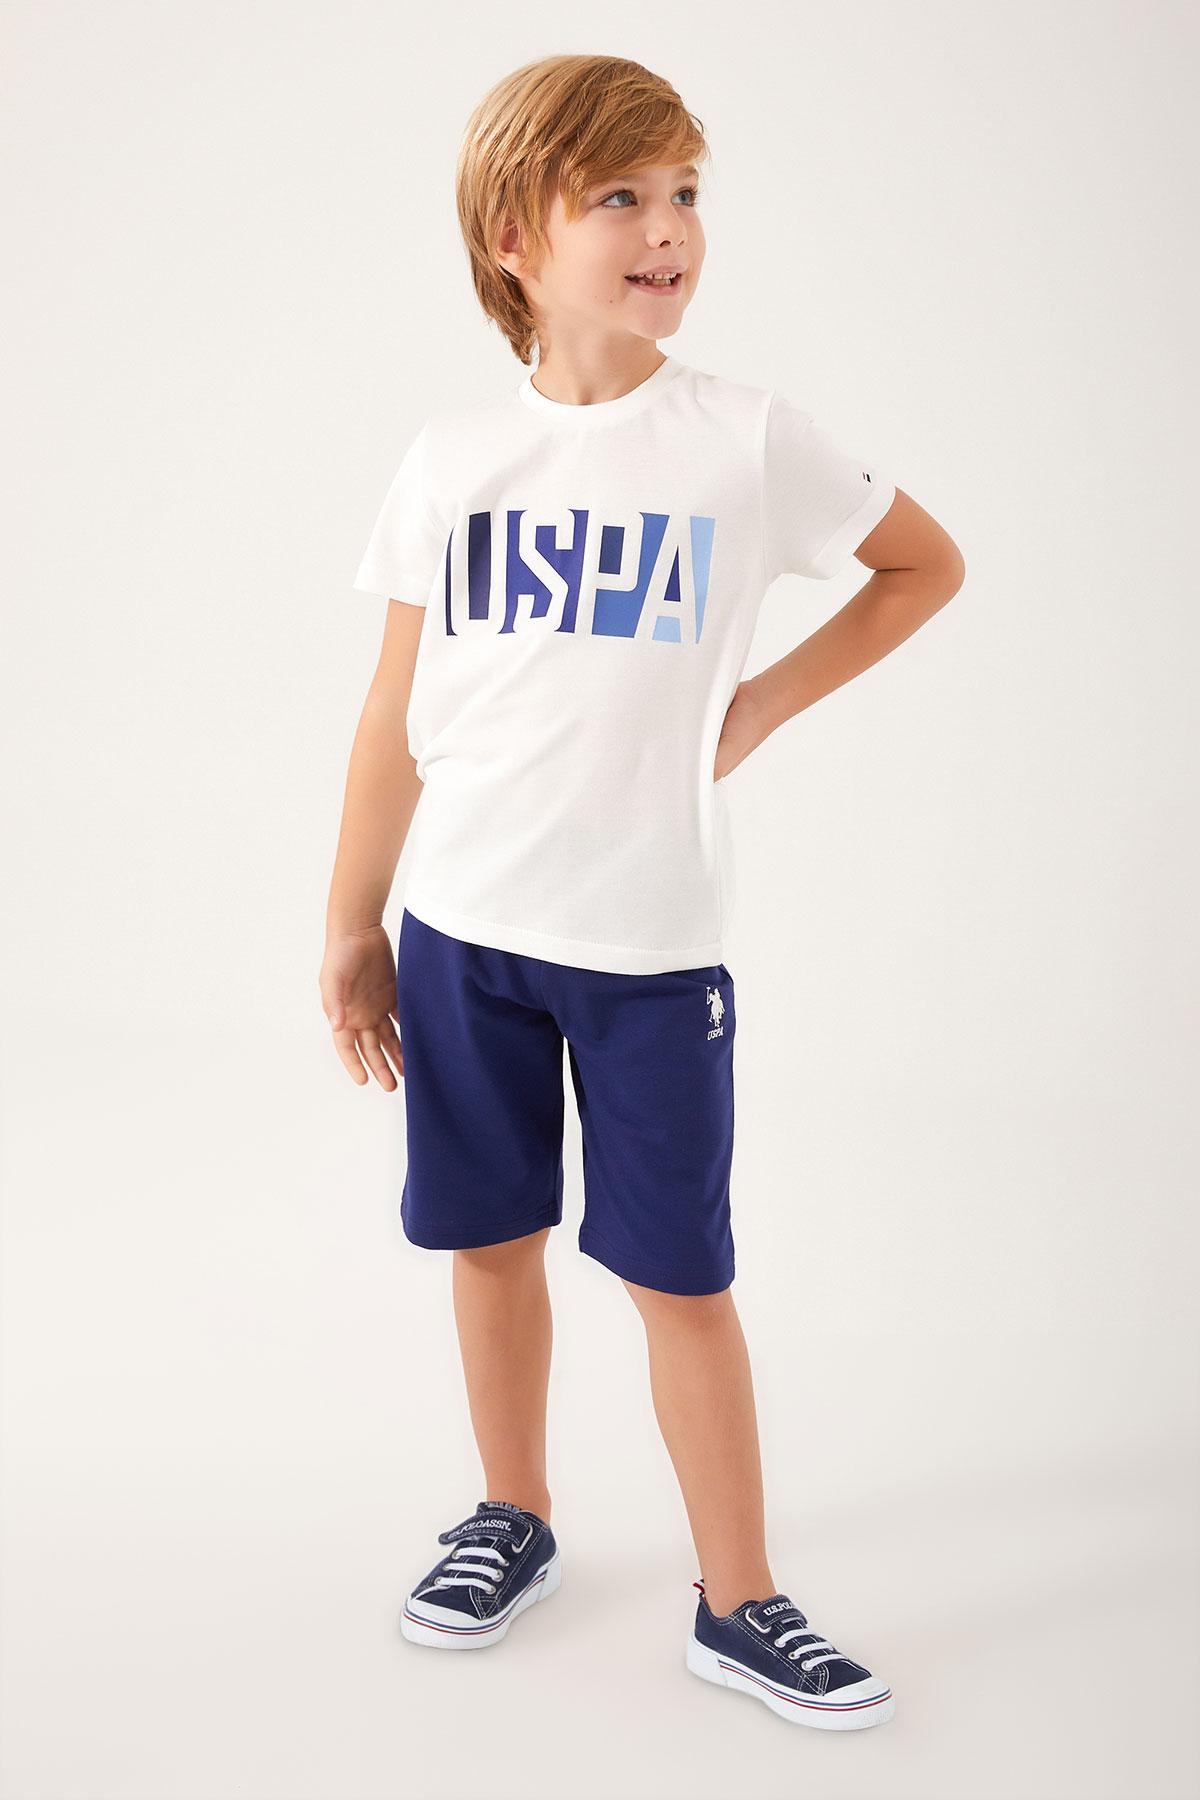 Selected image for U.S. POLO ASSN. Komplet šorc i majica za dečake US1325-G teget-beli